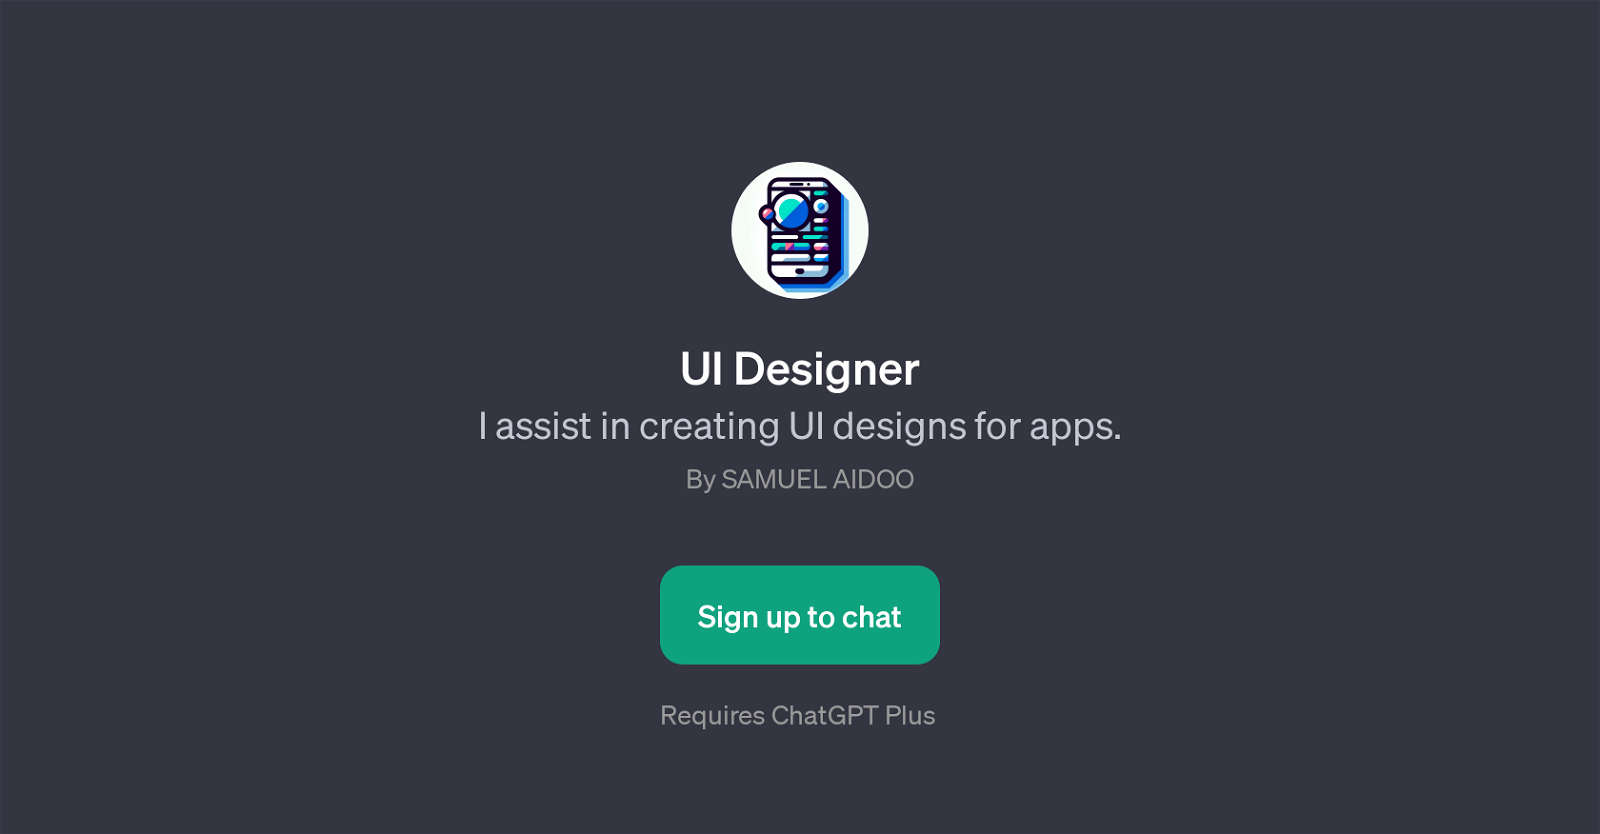 UI Designer website